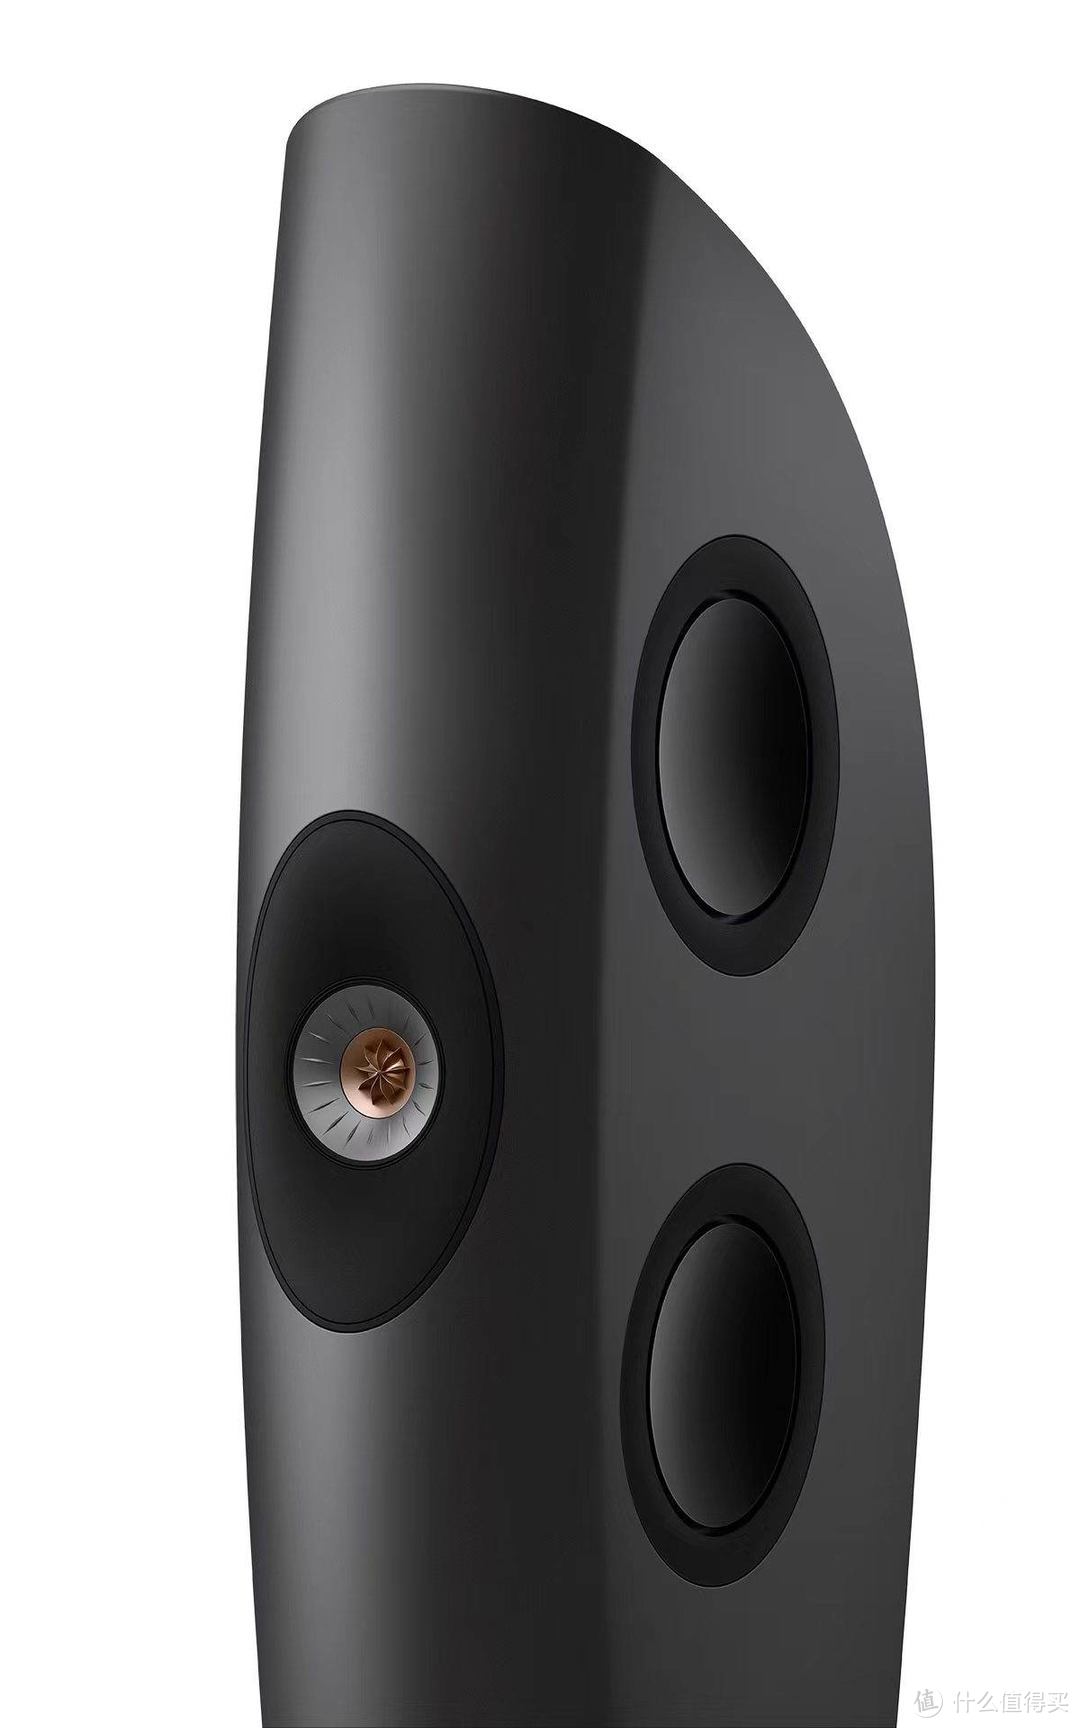 KEF 发布新款“BLADE”旗舰落地式扬声器和开创性“REFERENCE”扬声器